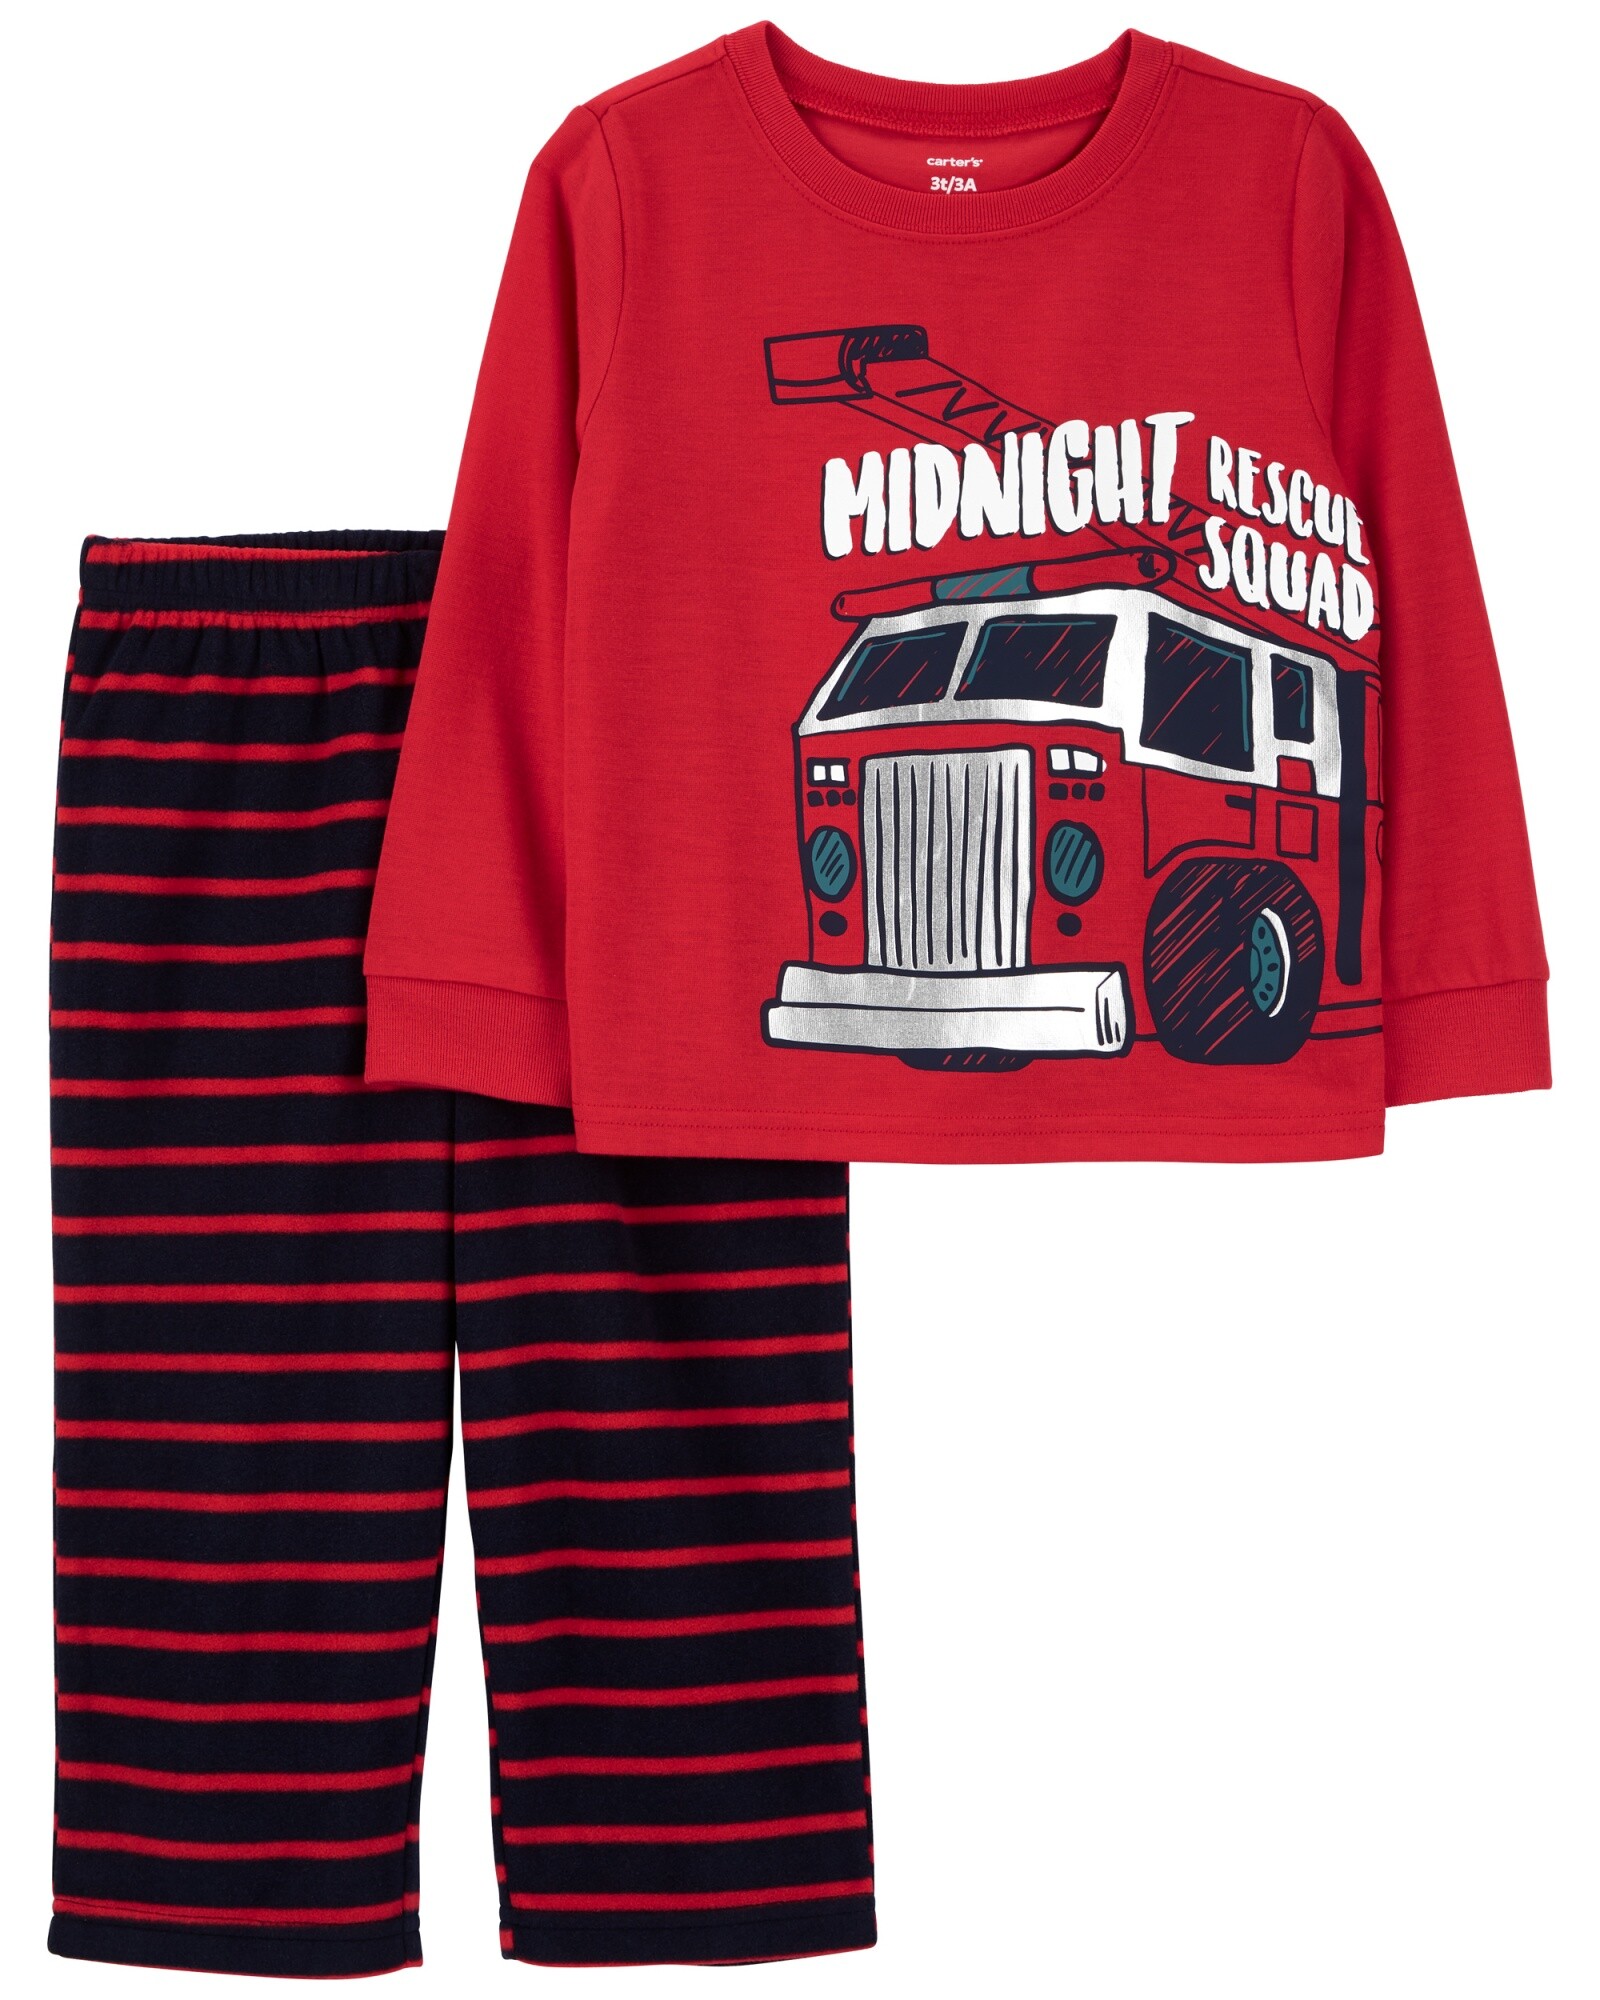 Pijama dos piezas, pantalón de micropolar y remera de poliéster, estampa bomberos Sin color